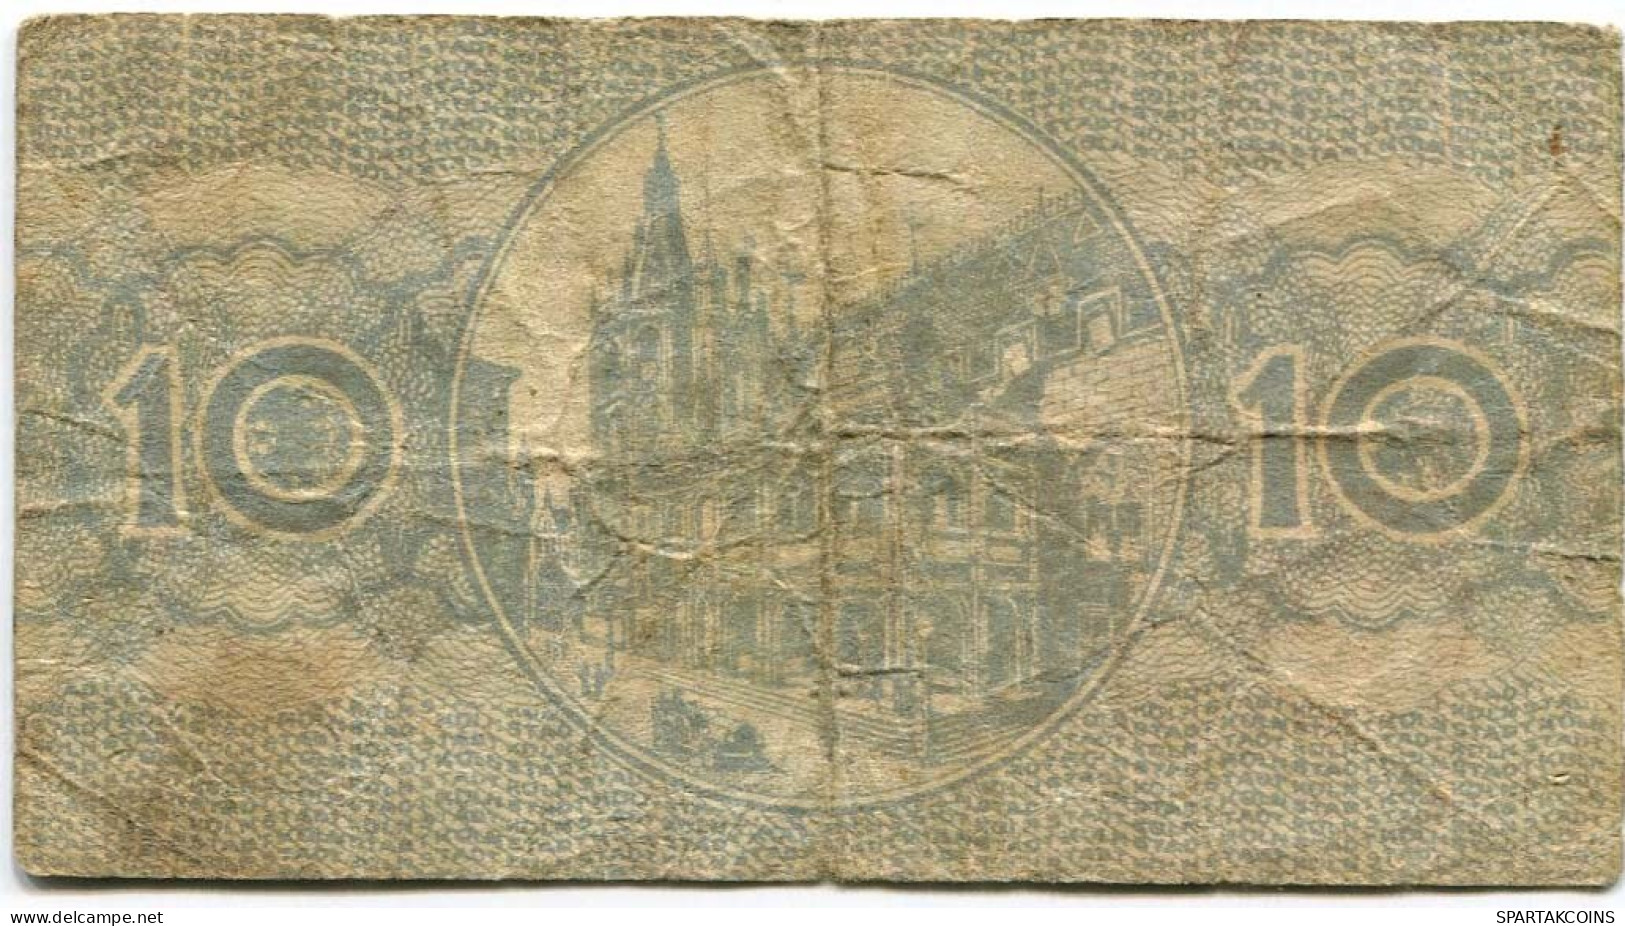 10 PFENNIG 1920 Stadt COLOGNE Rhine DEUTSCHLAND Notgeld Papiergeld Banknote #PL820 - [11] Local Banknote Issues